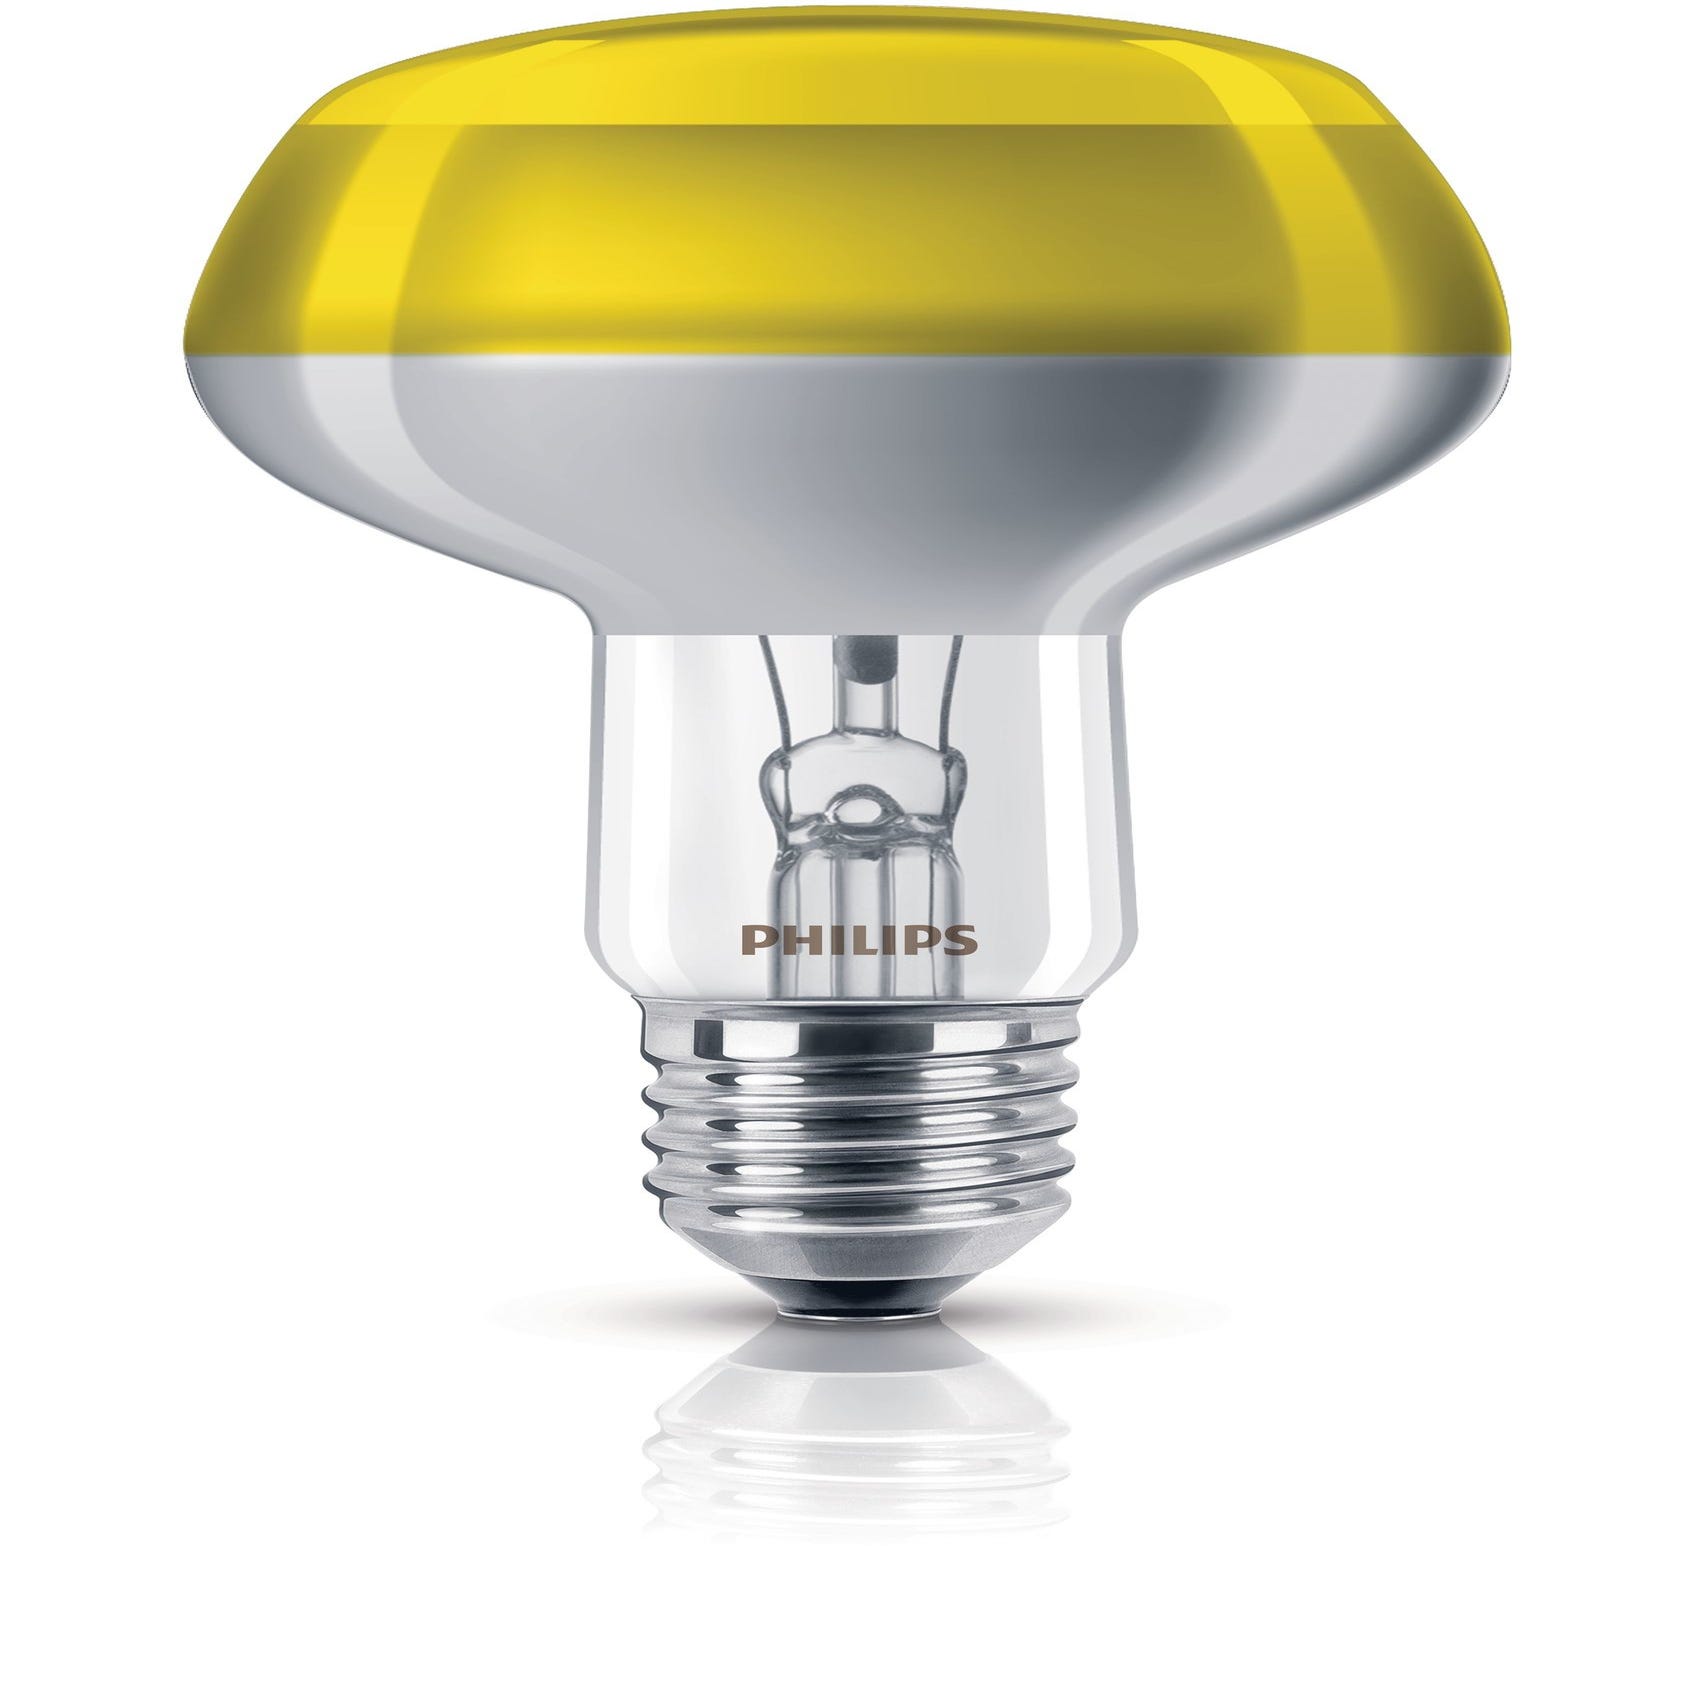 Philips Incandescent reflector lamp 8711500066558 lampada a incandescenza  60 W E27 - Nuovo